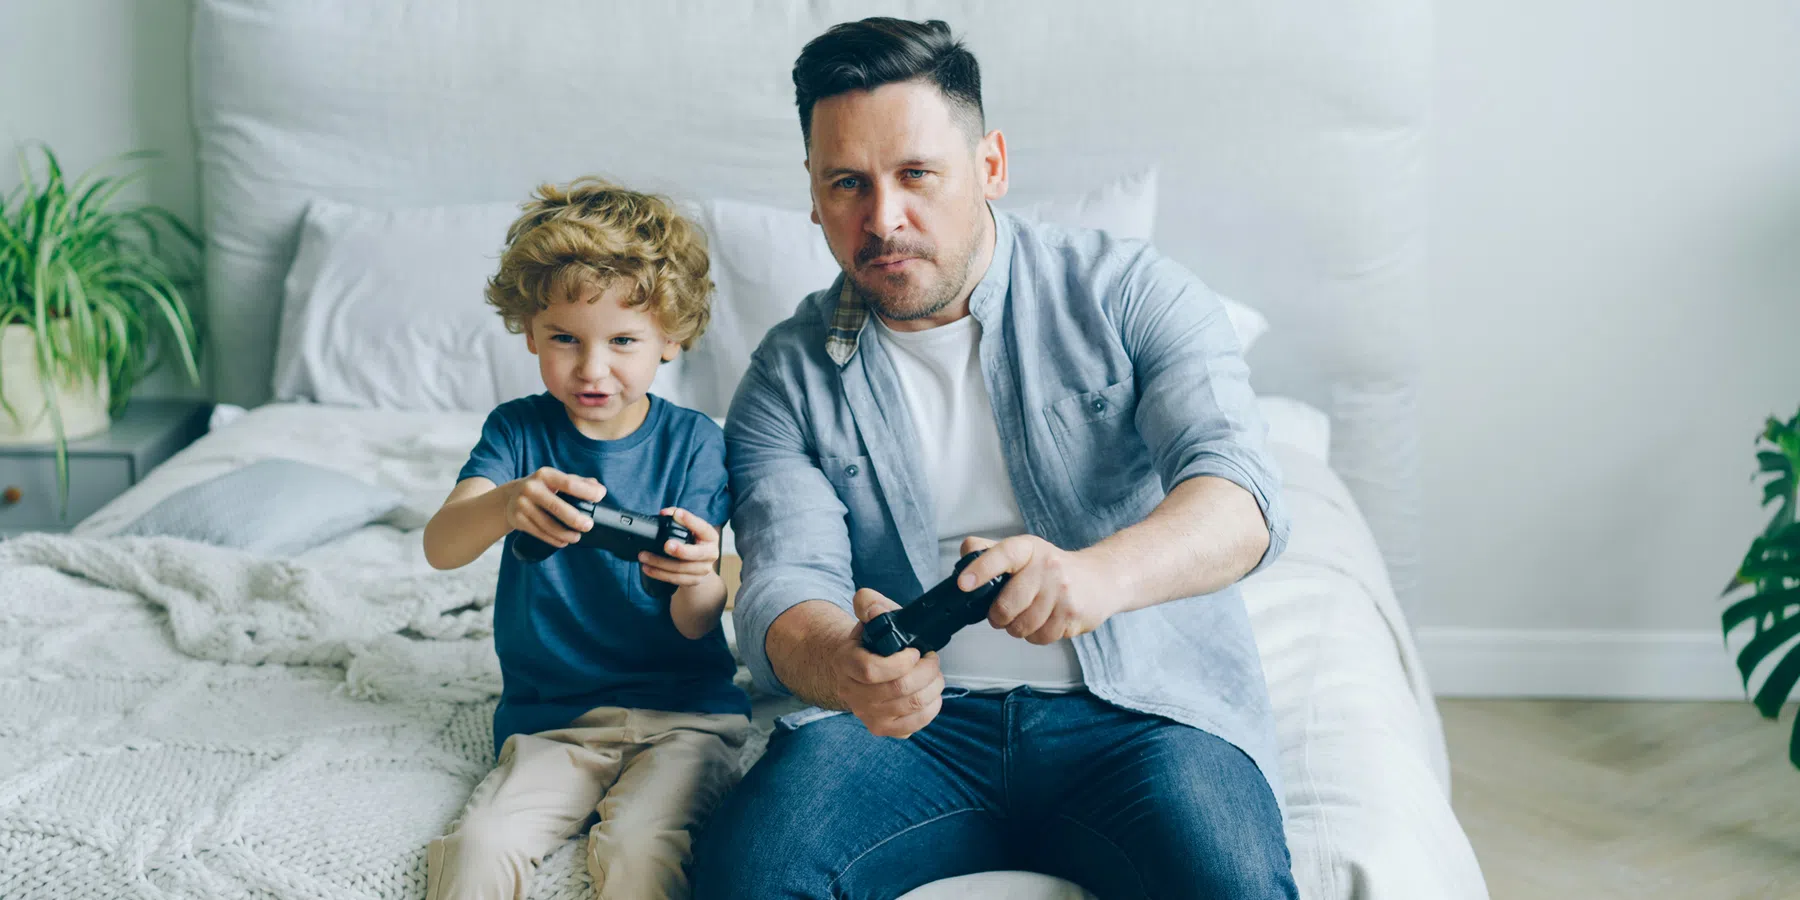 Kijkwijzer start Gamewijzer met advies voor ouders van gamende kinderen